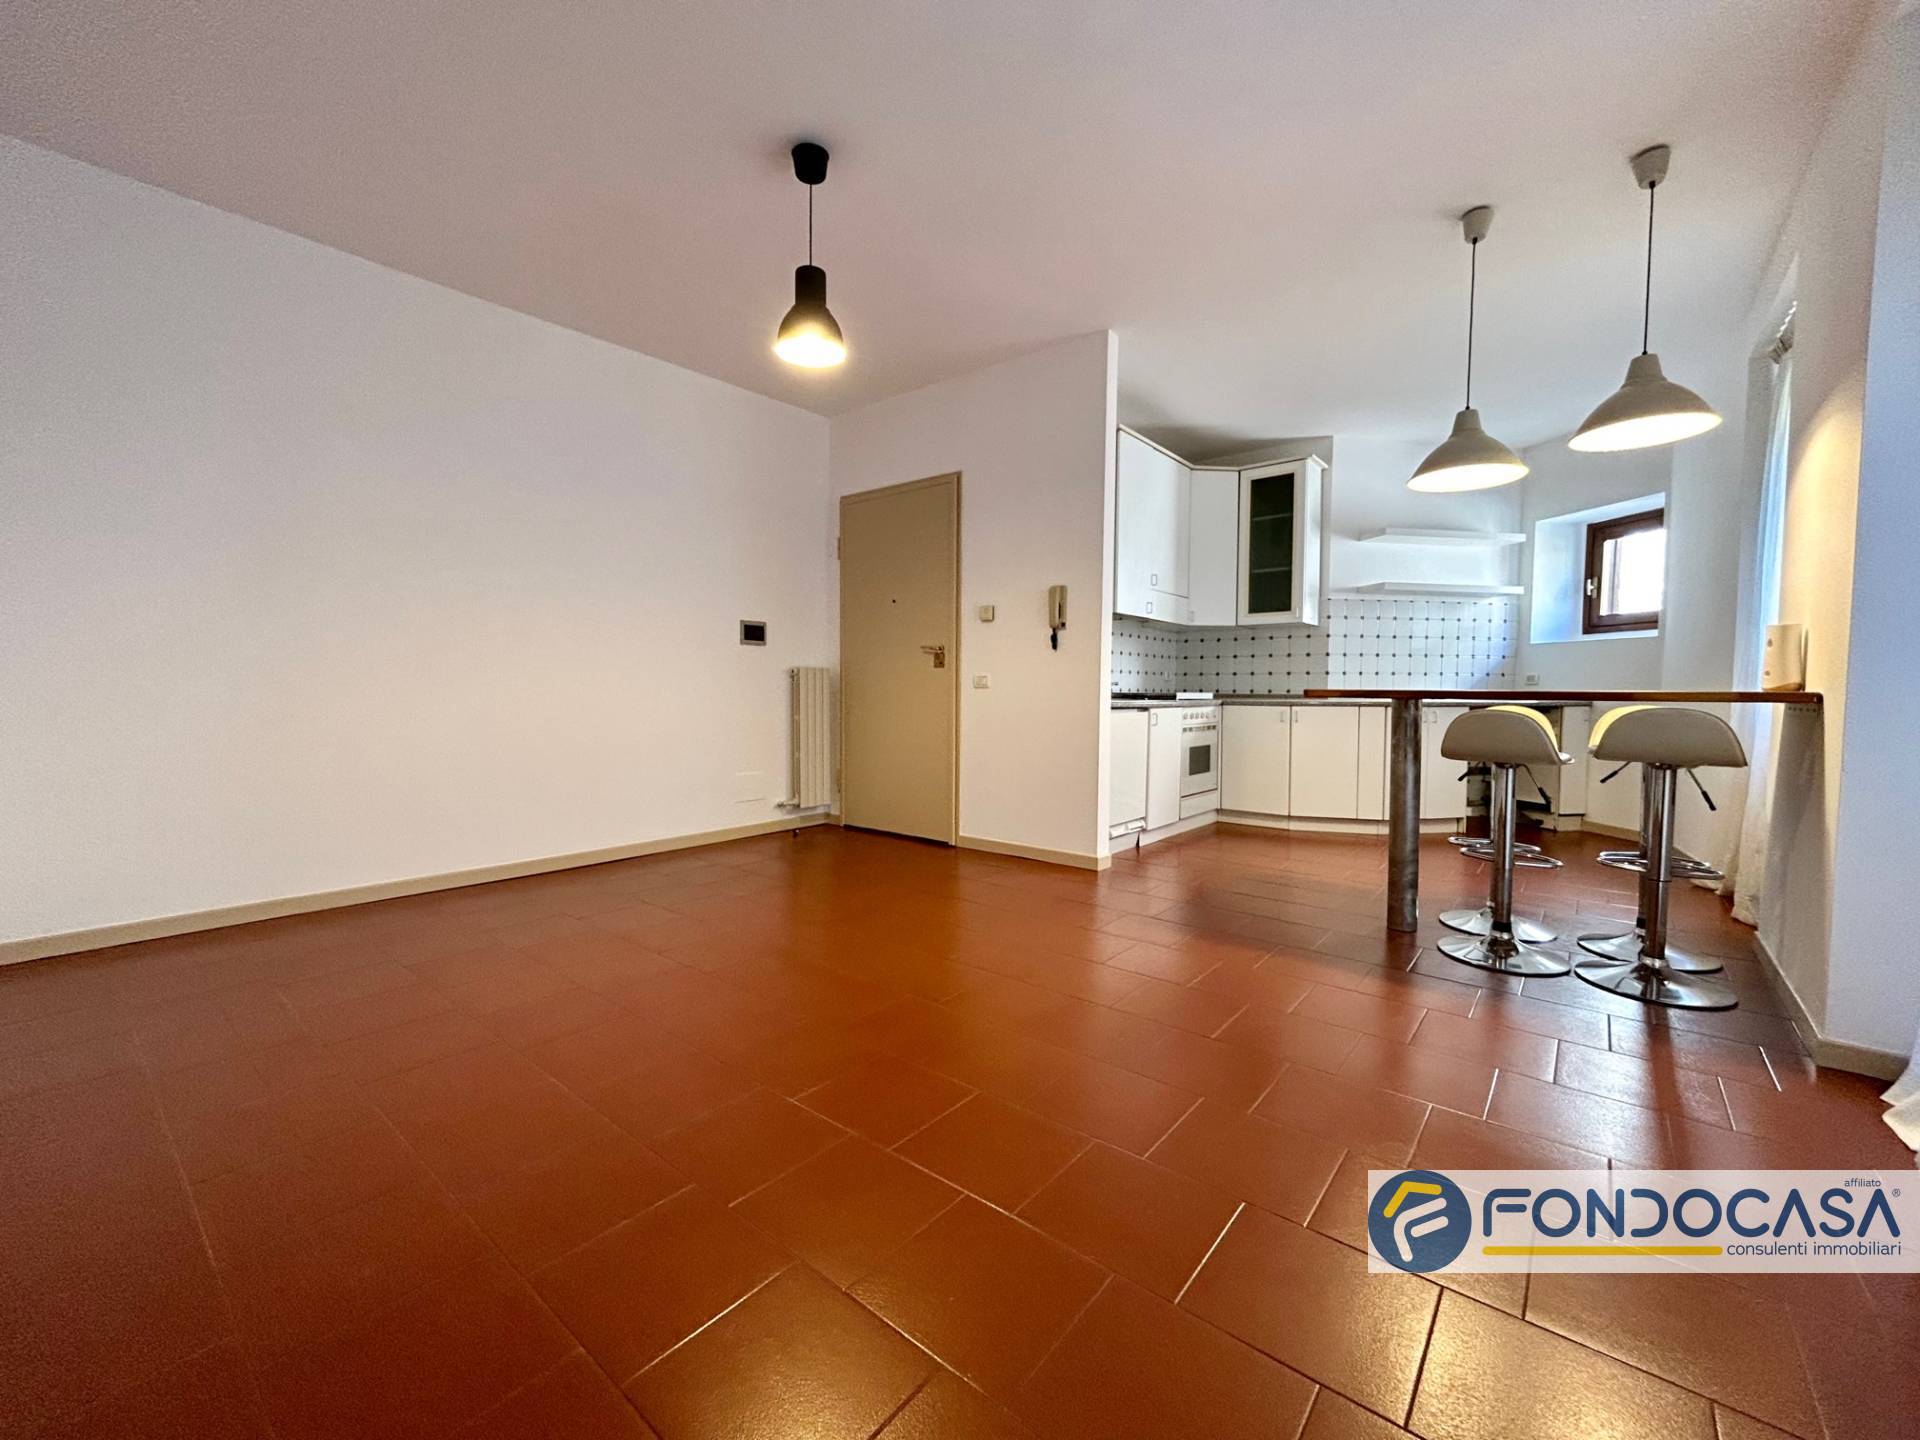 Appartamento in vendita a Castelli Calepio, 2 locali, prezzo € 82.000 | PortaleAgenzieImmobiliari.it